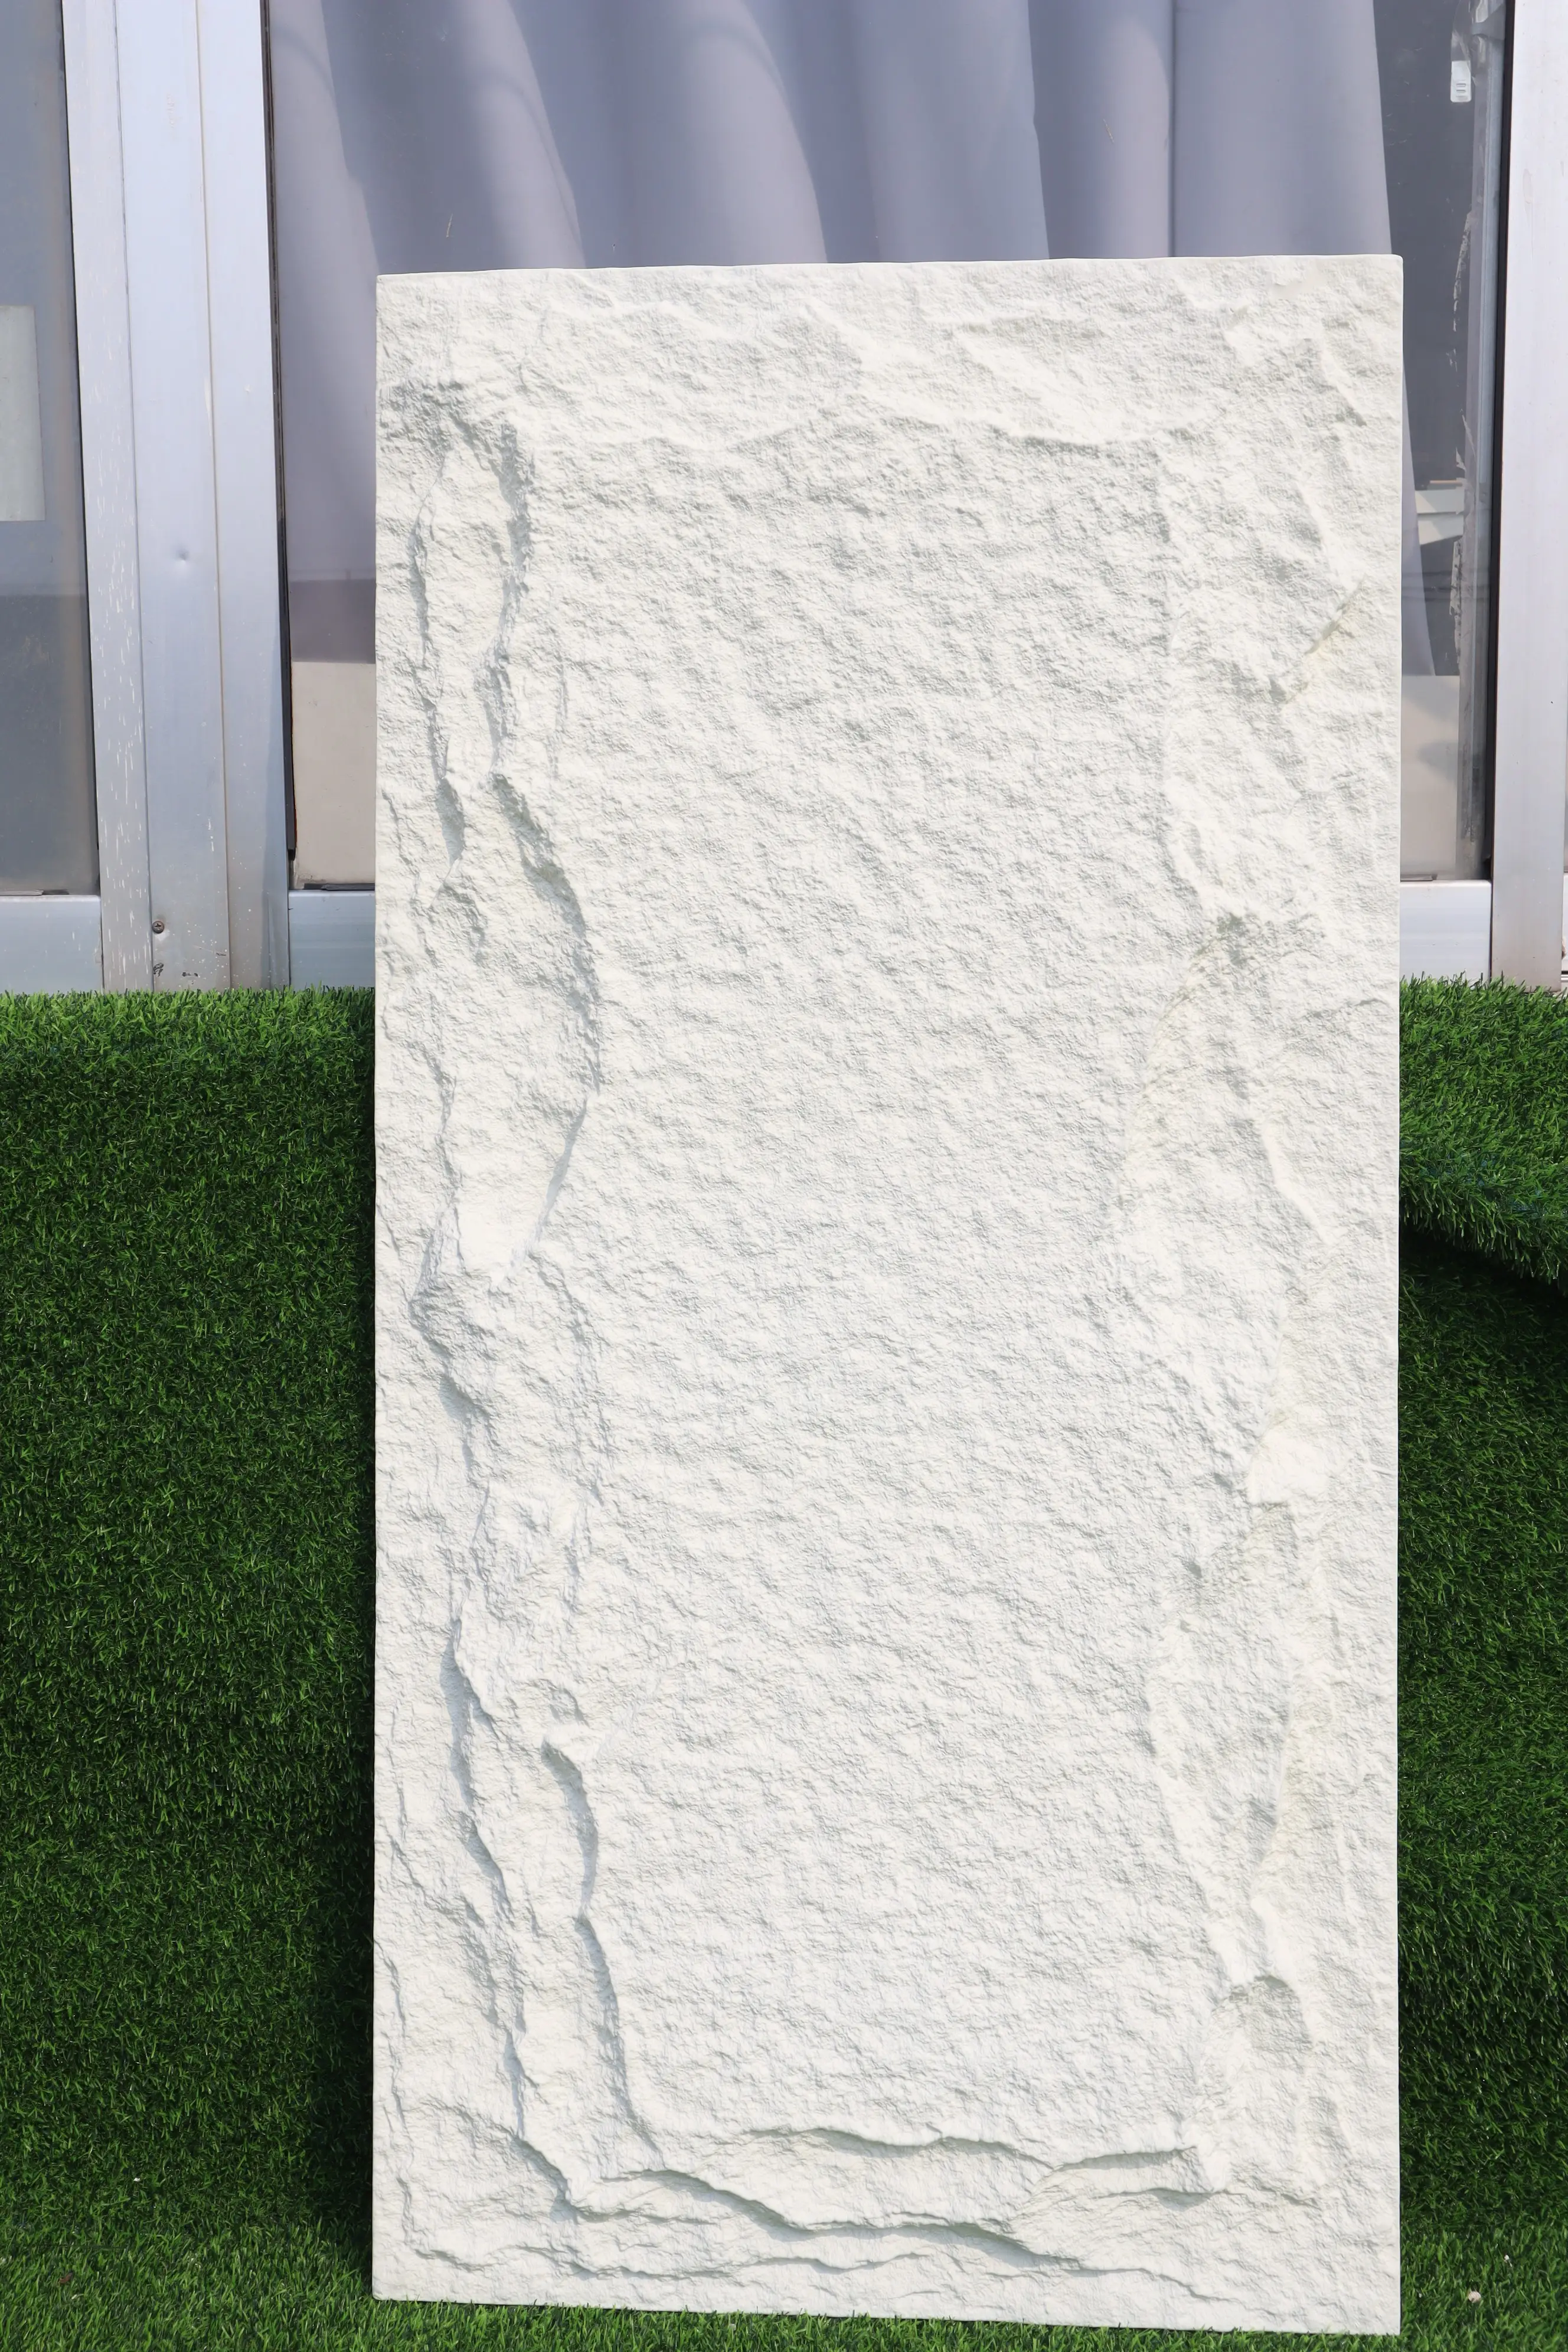 Di lusso PU finta pietra artificiale un pannello a parete parete decorativa parete in poliuretano parete